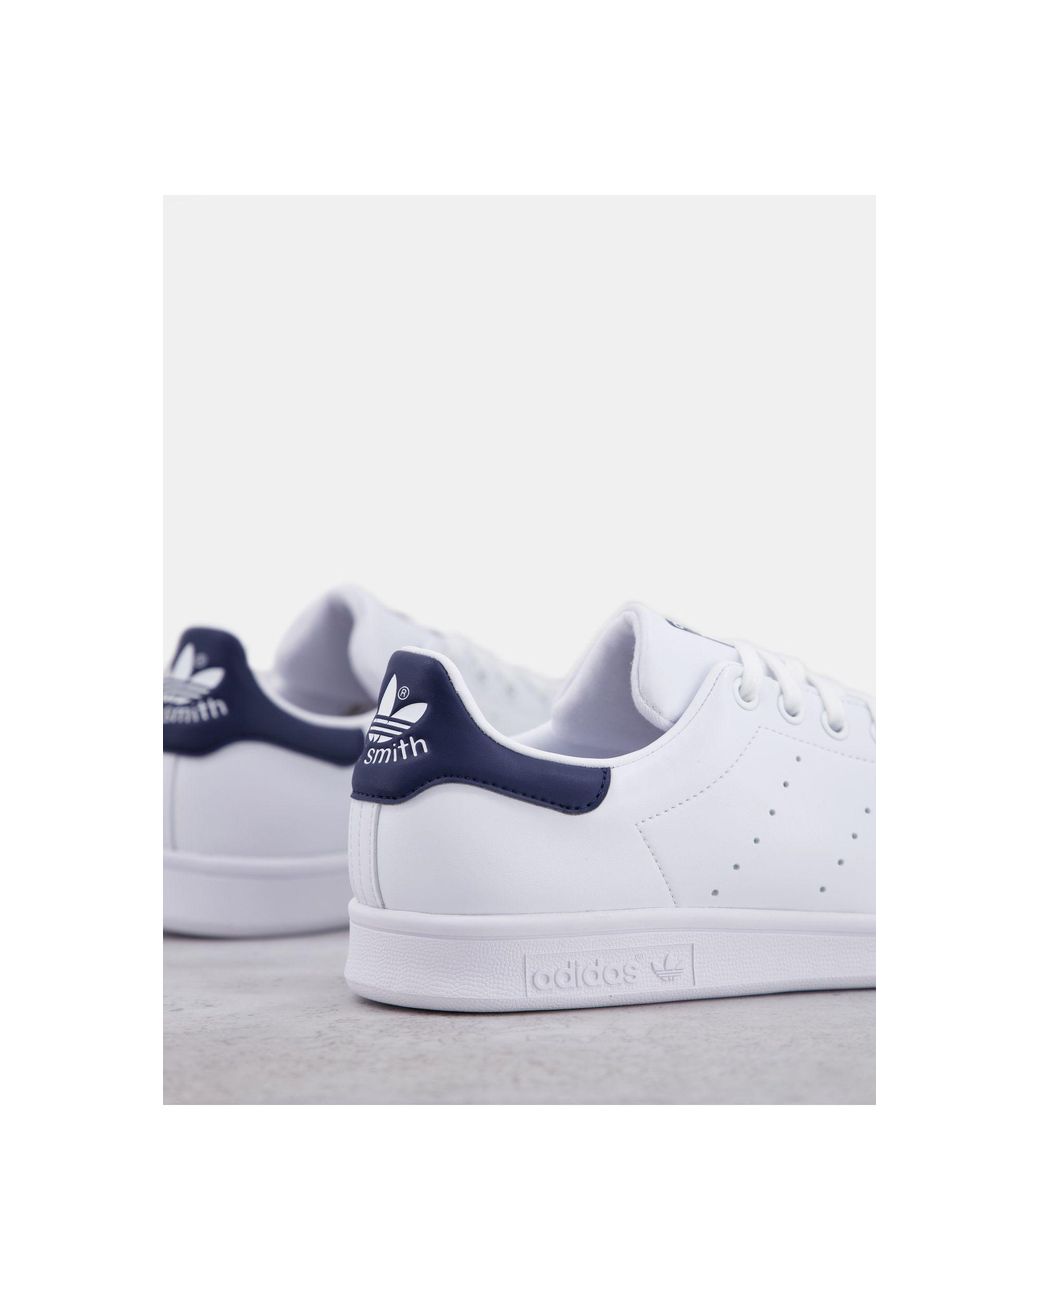 Stan smith - sneakers bianche con linguetta blu navy - whiteadidas  Originals in Pelle da Uomo | Lyst